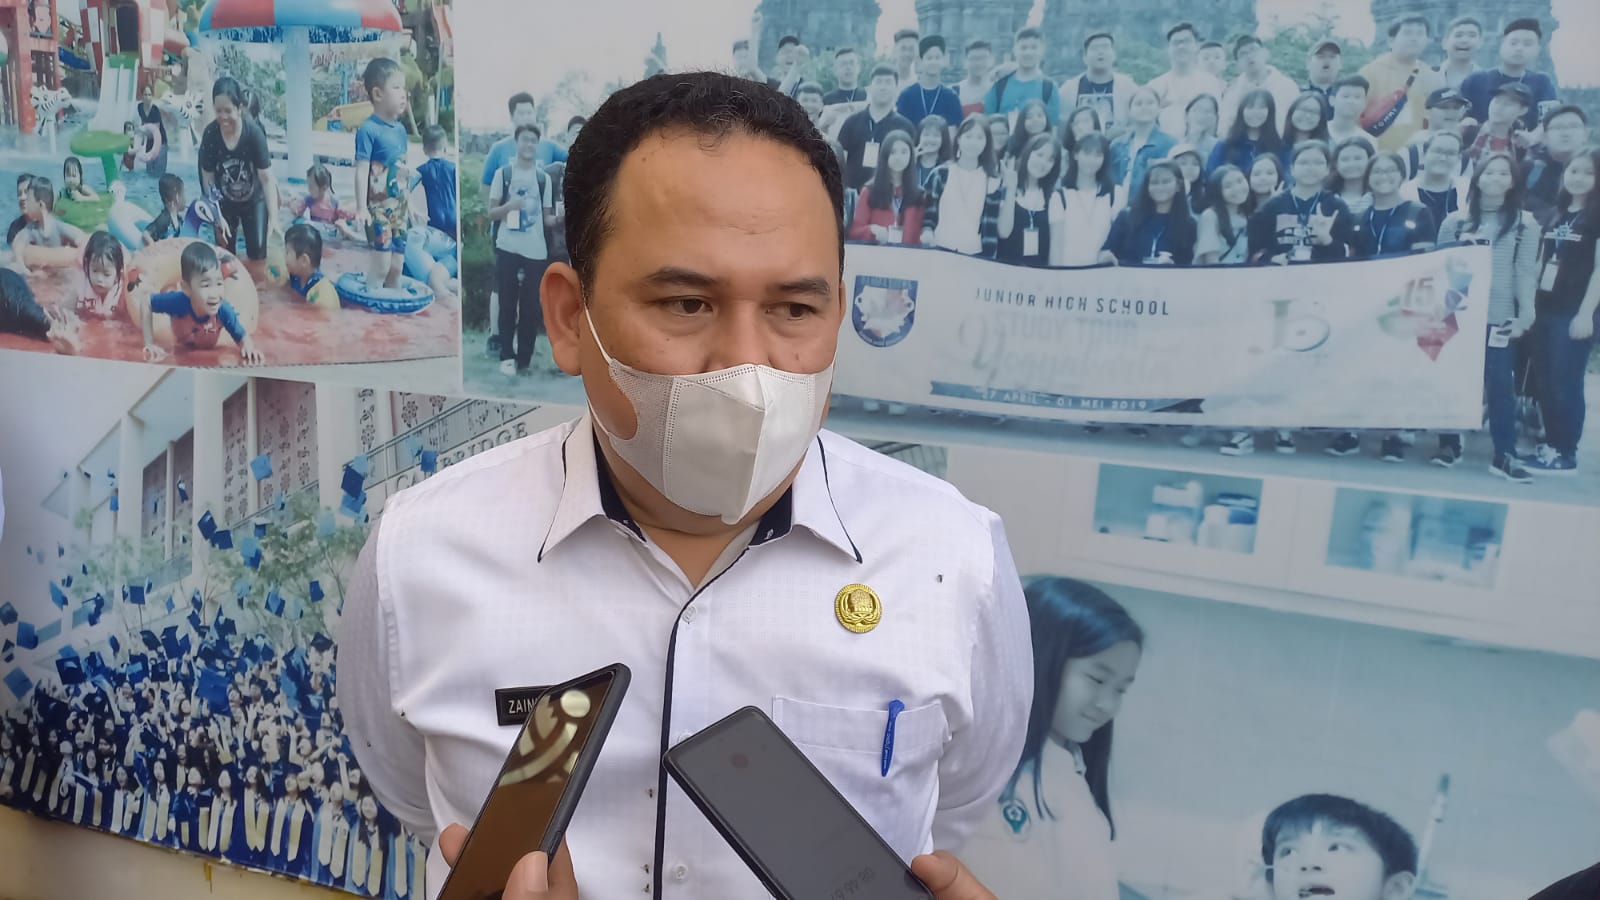 Kadiskes Kota Pekanbaru: Alhamdulillah Belum Ada Efek Samping Serius